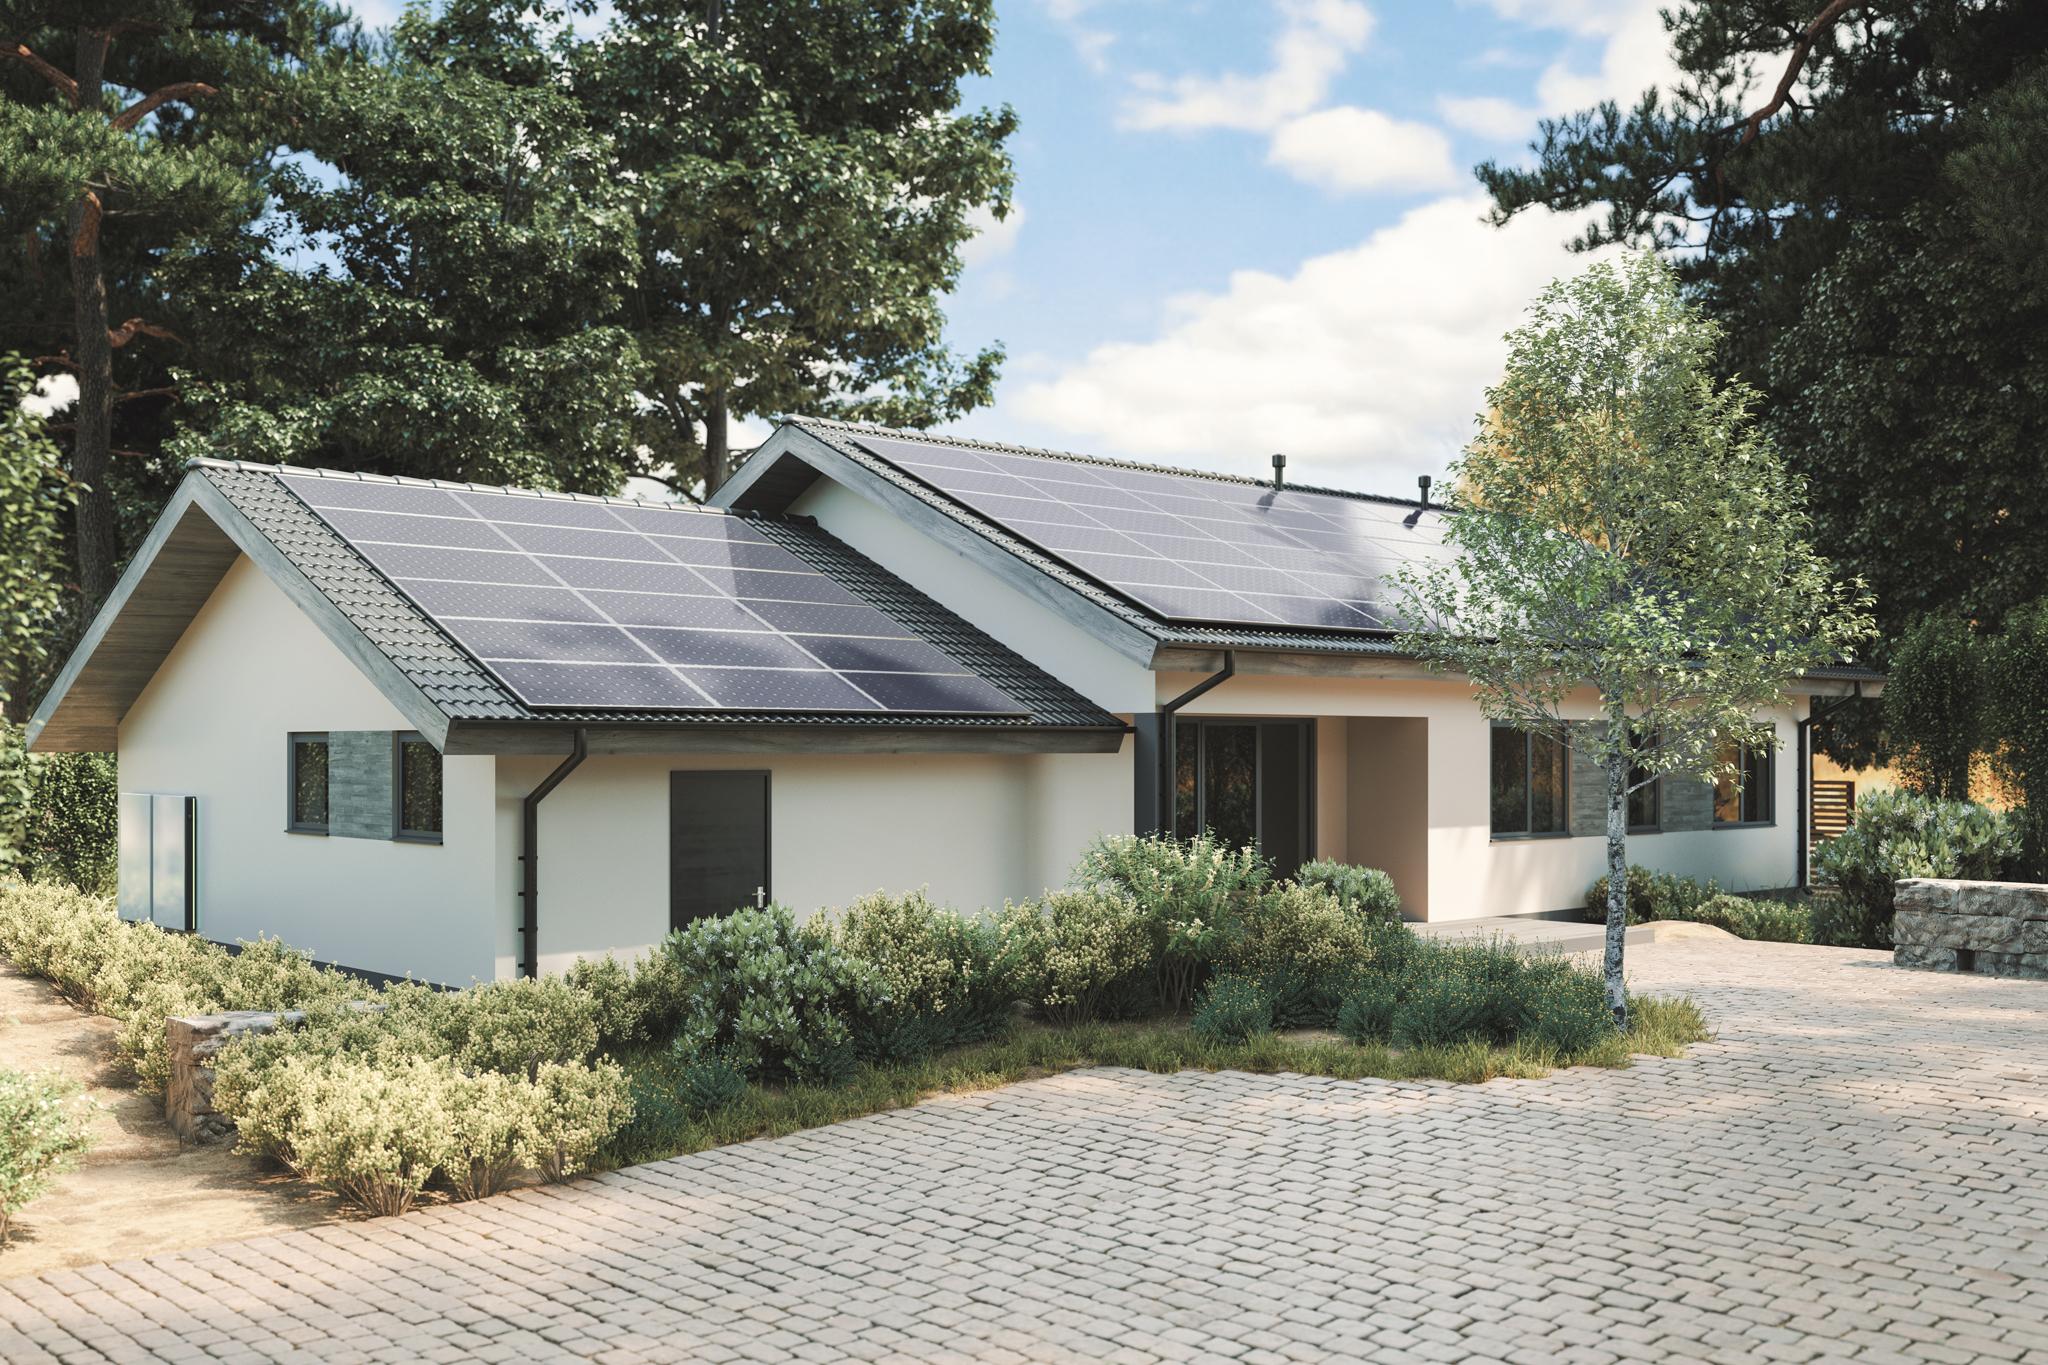 Einfamilienhaus mit PV-Anlage auf dem Dach - Tesla Solarpanels